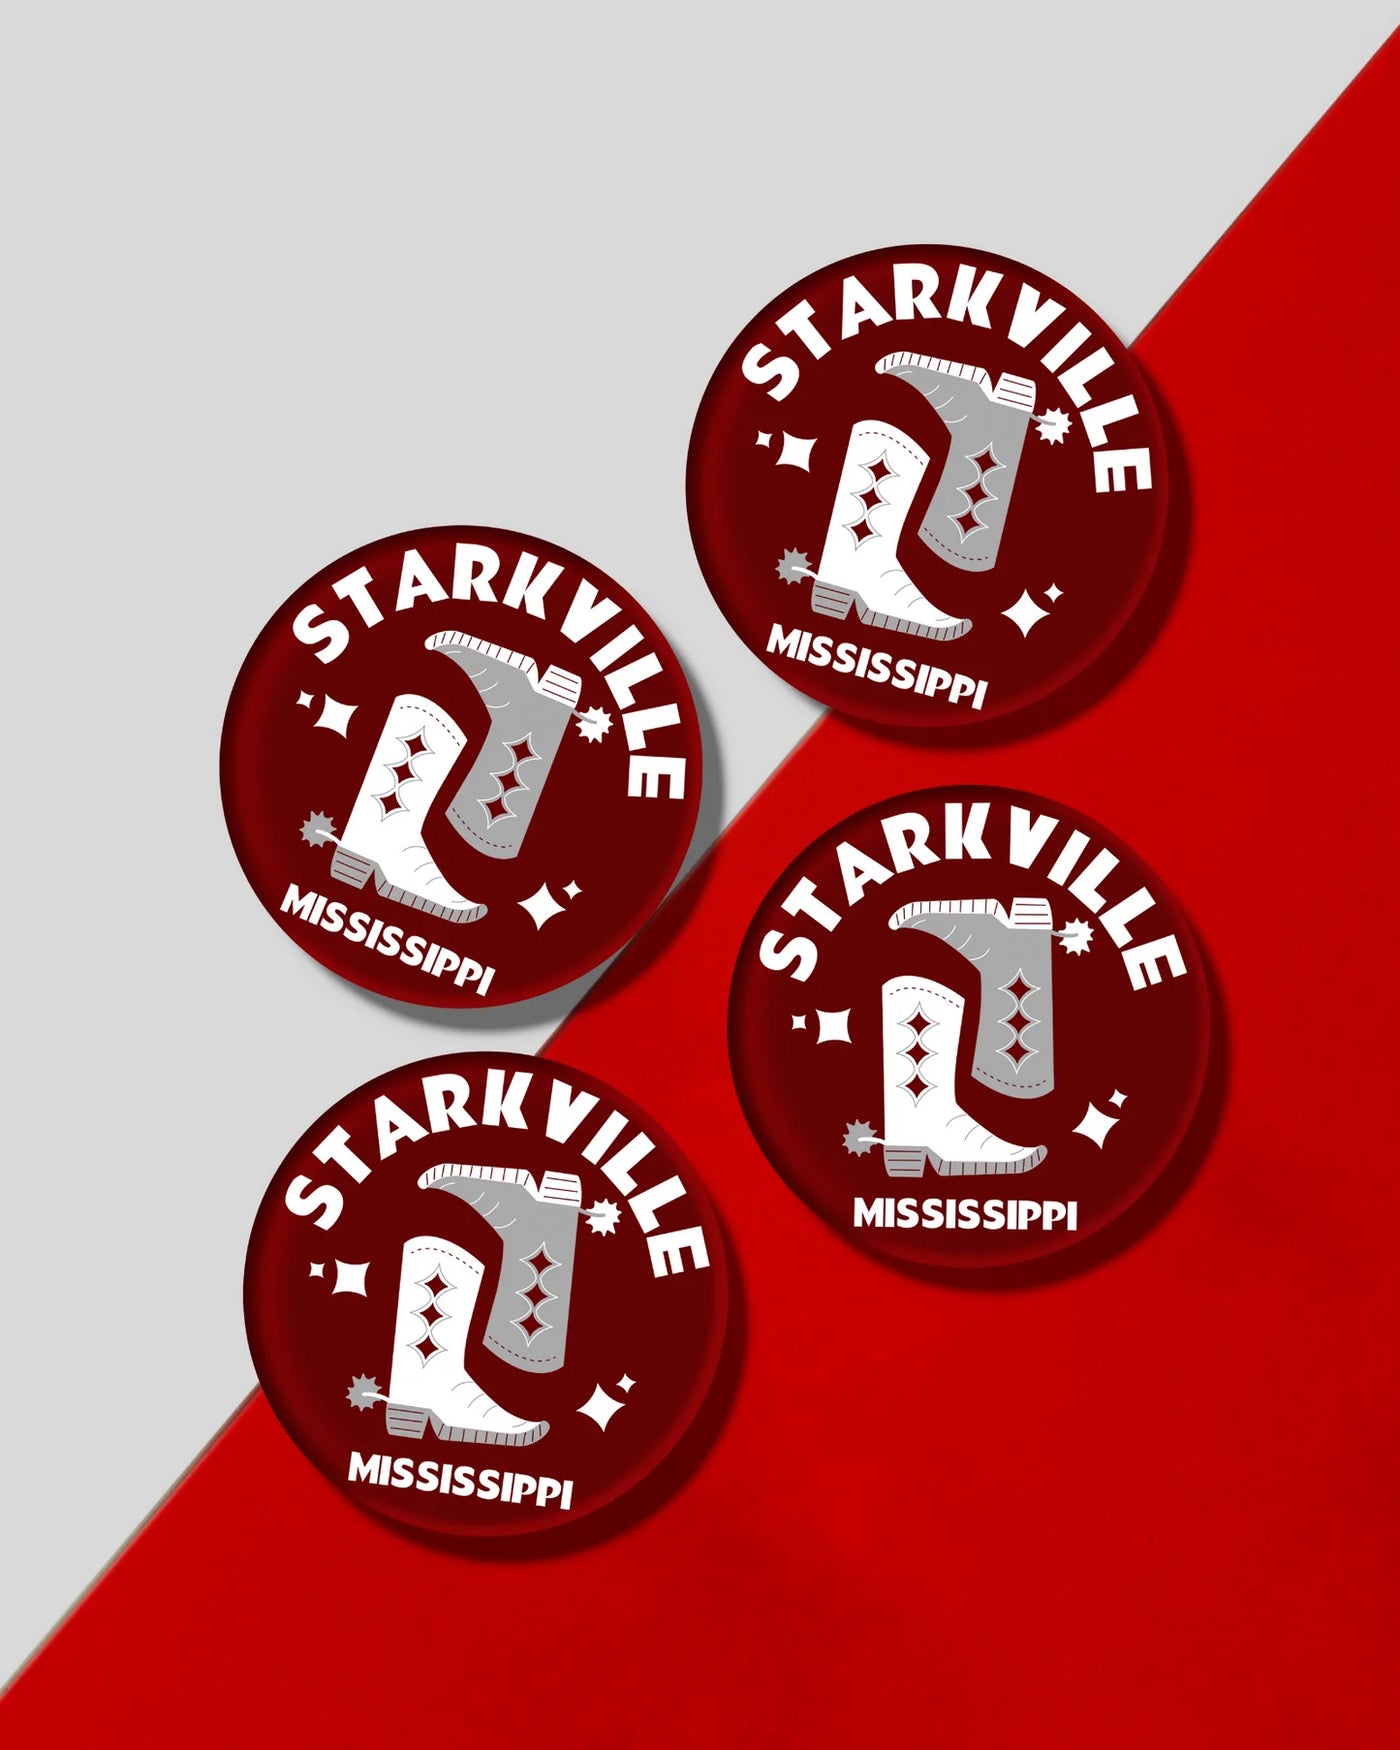 Starkville Kickoff Coasters